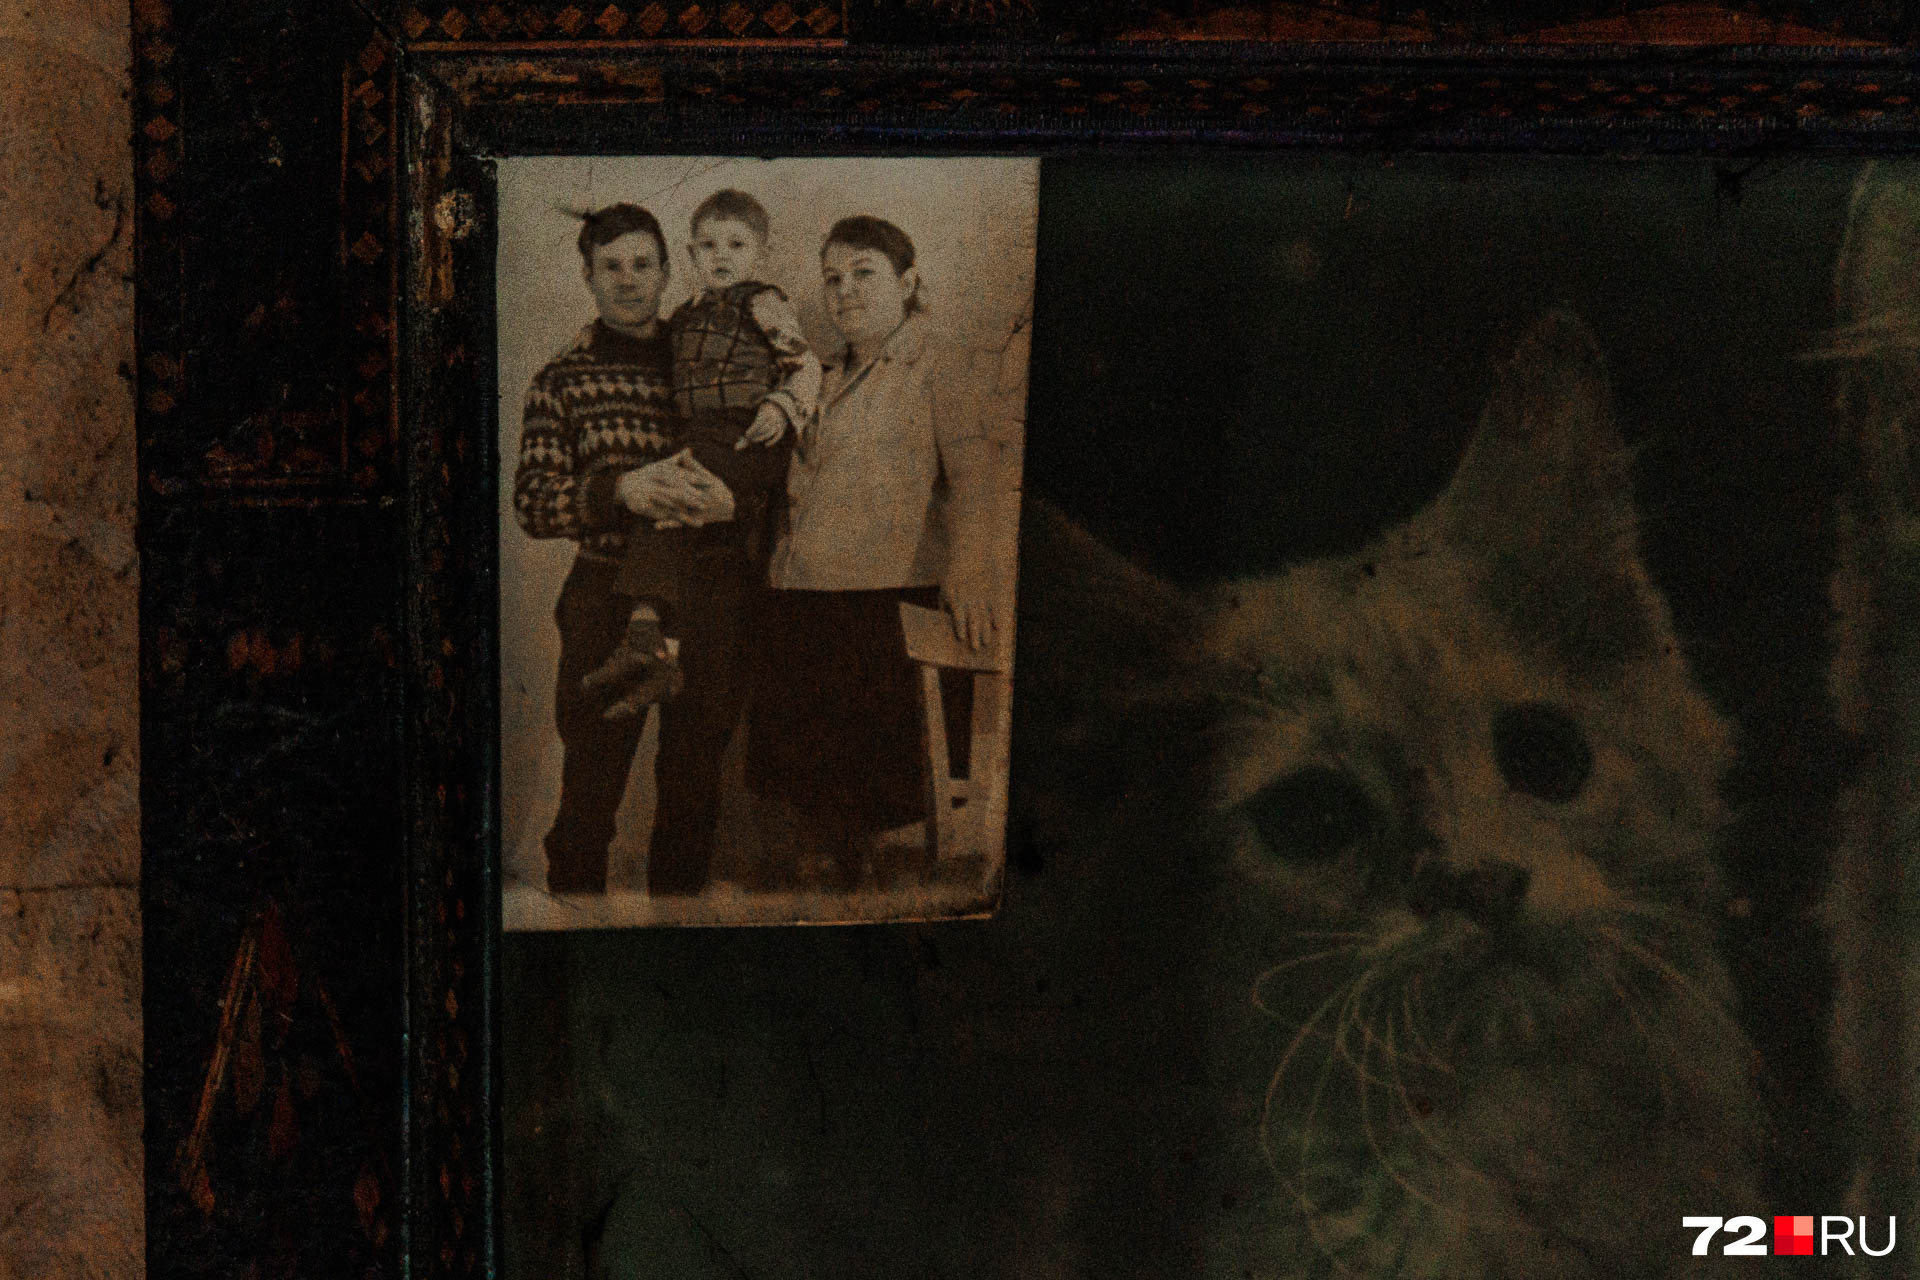 Мама, папа и маленький Павел. Фото прикреплено на снимок животных. Сейчас в доме тоже две кошки. Как и на картине